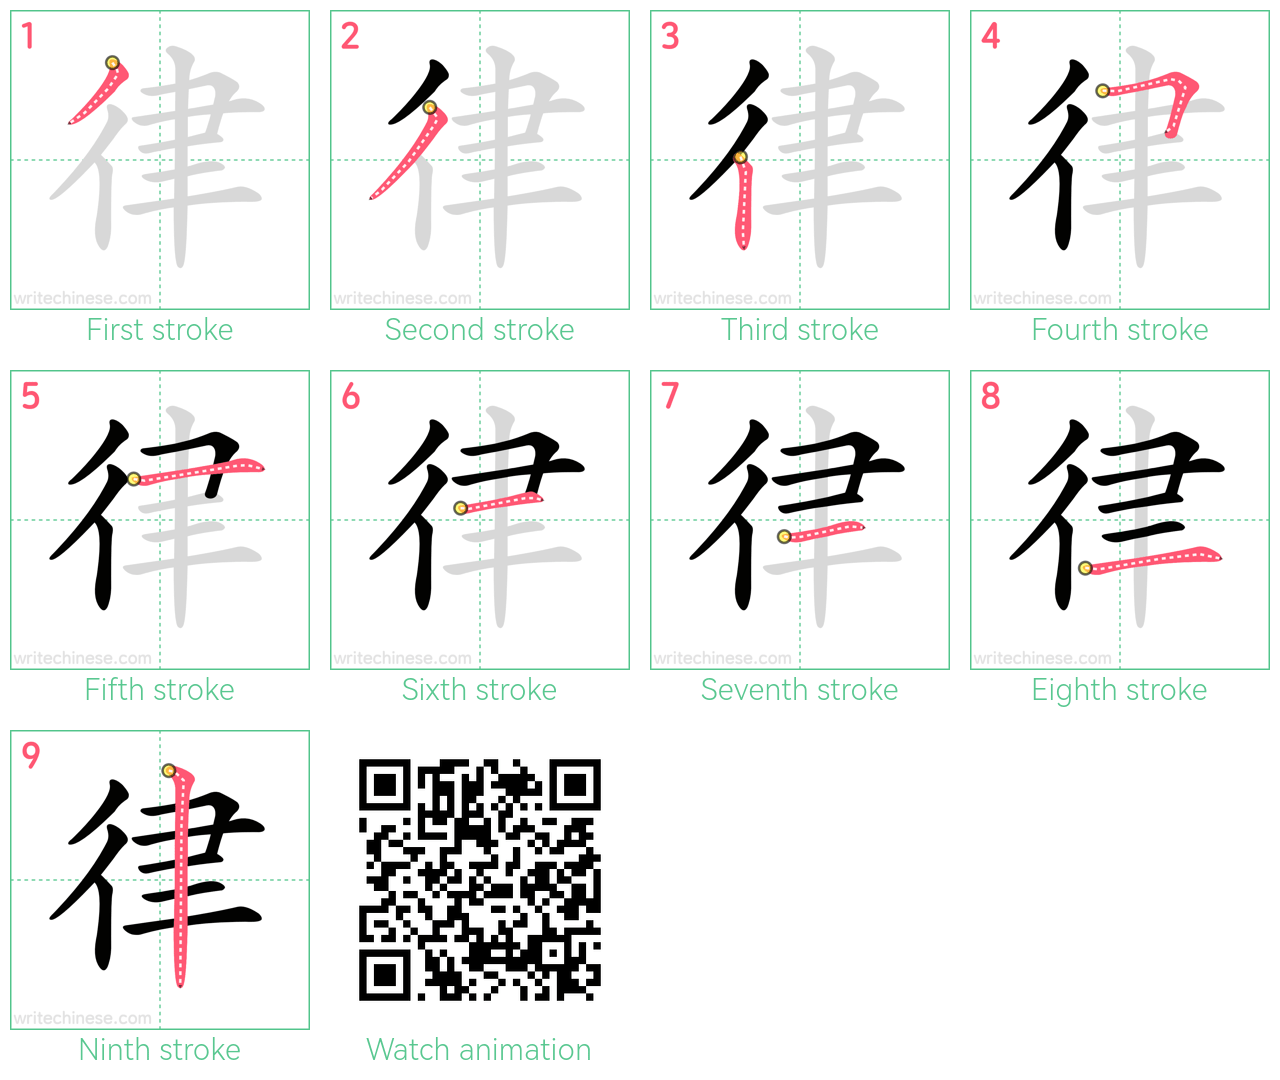 律 step-by-step stroke order diagrams